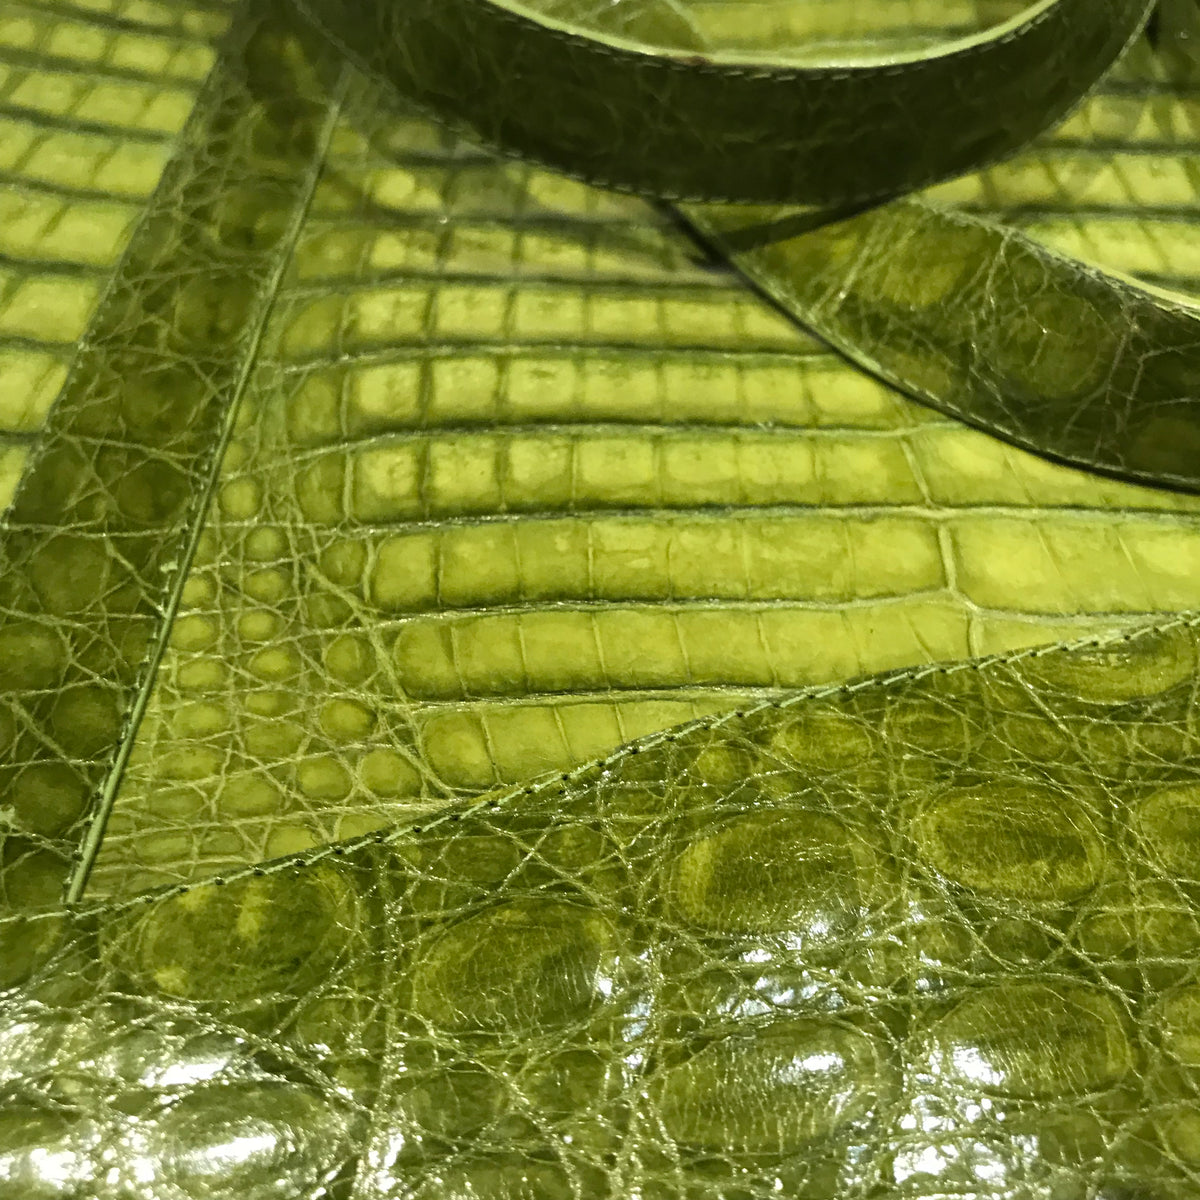 Kashani Lime Green All Over Alligator Purse Handbag - Dudes Boutique